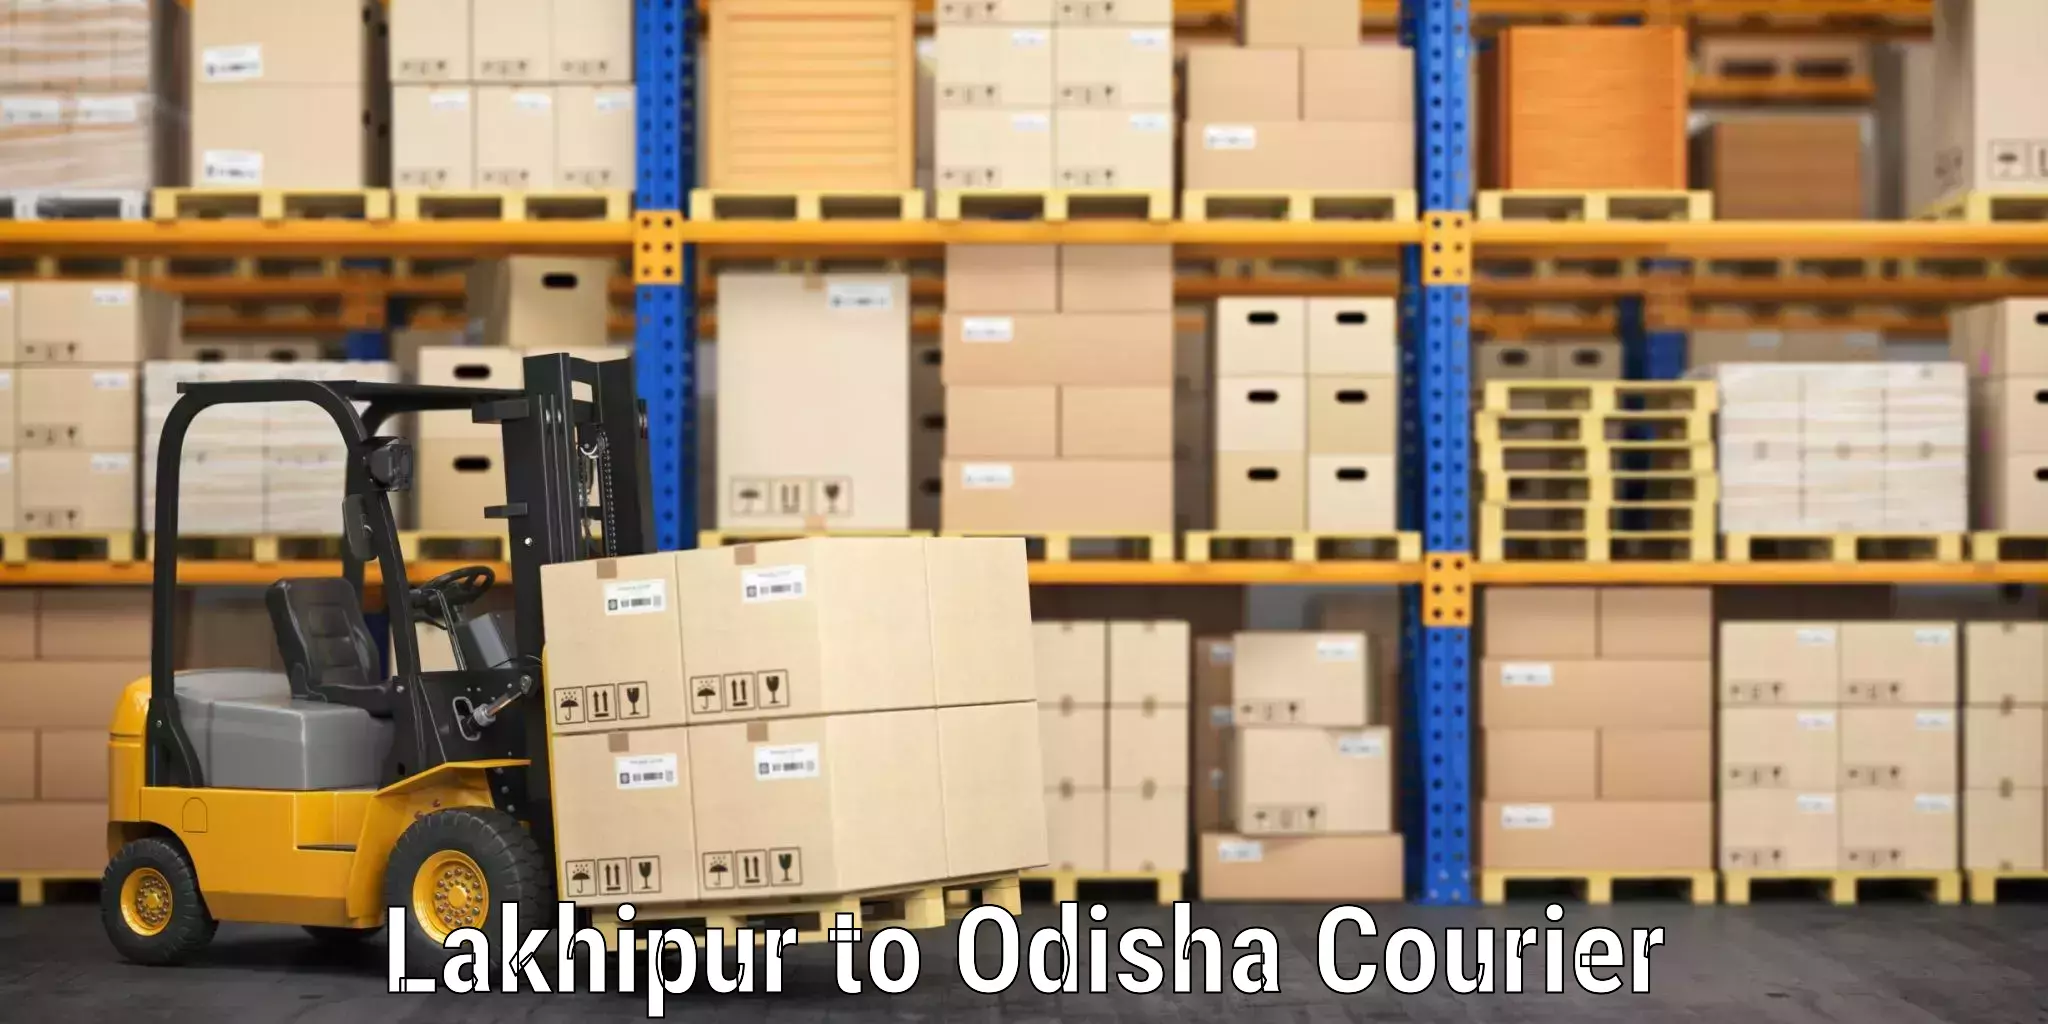 Baggage transport network Lakhipur to Odisha